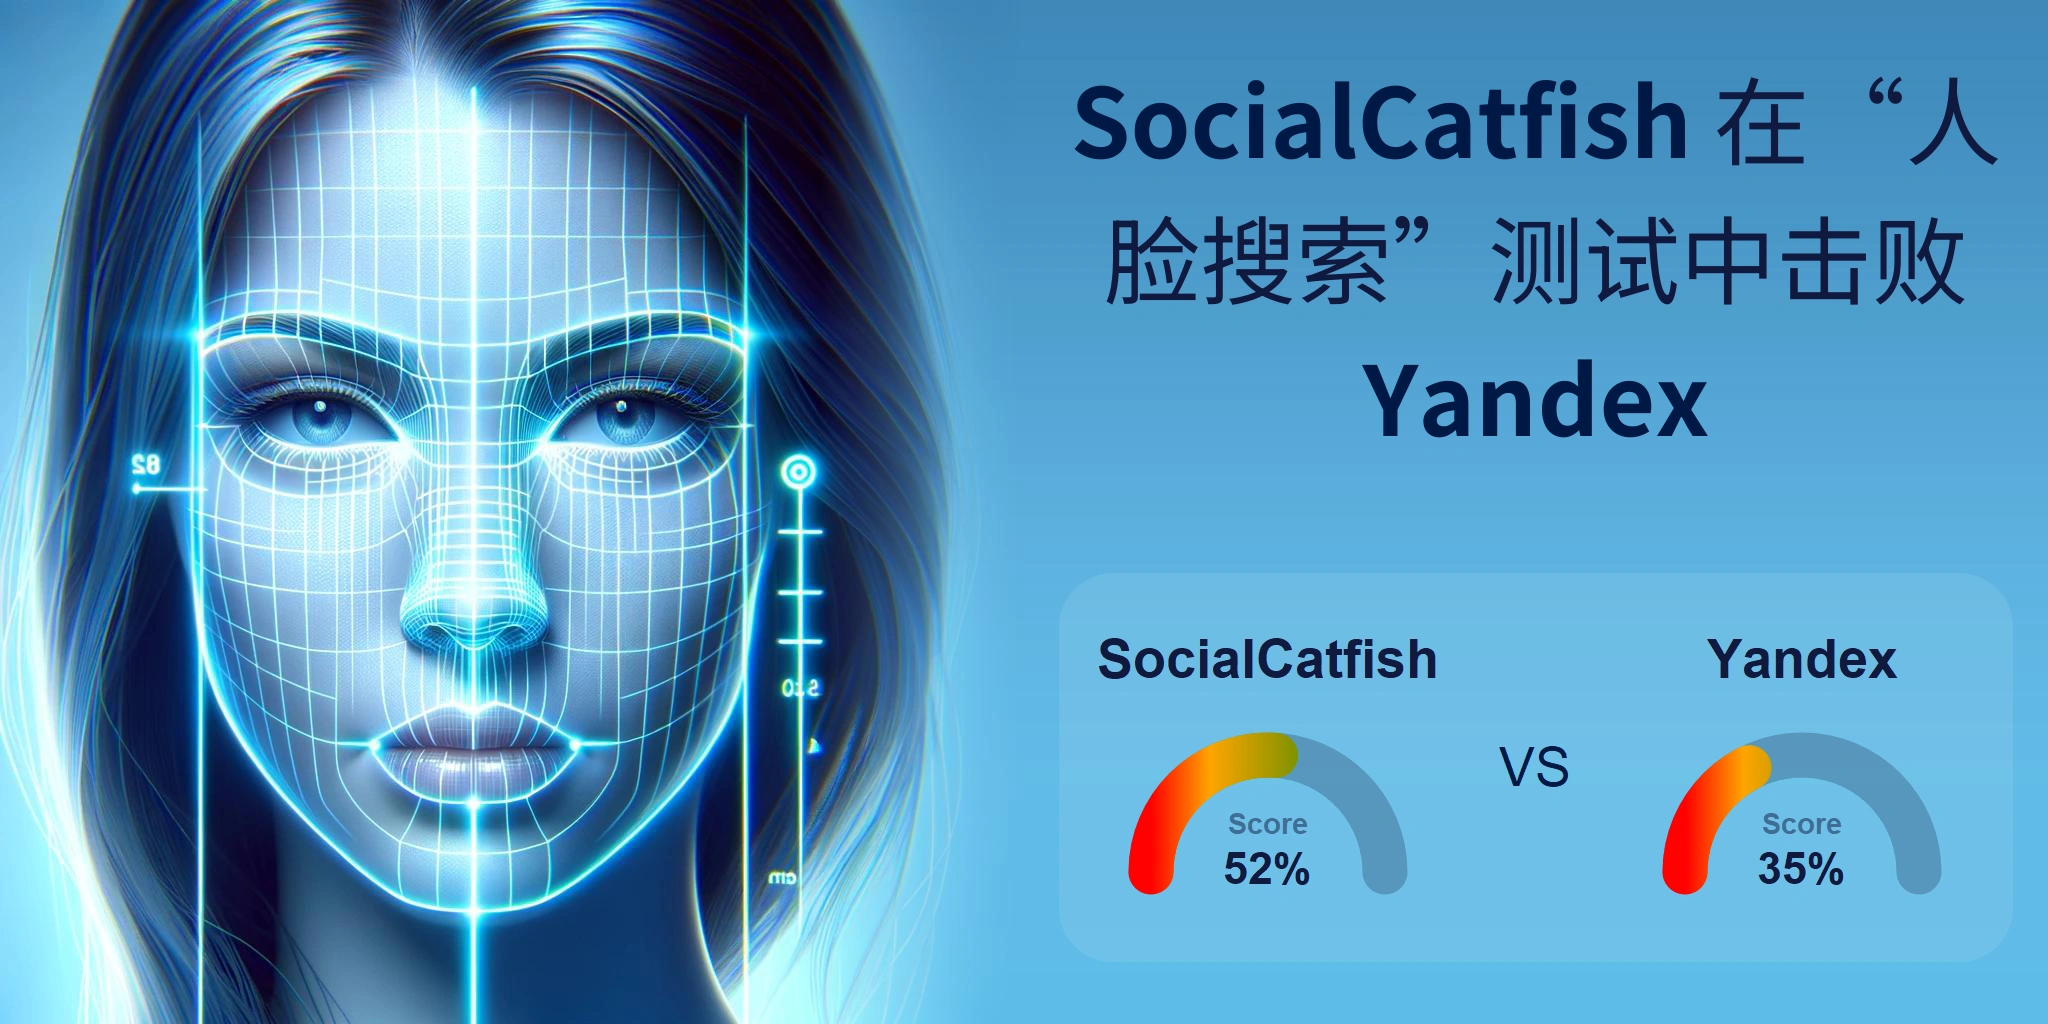 哪一个更适合人脸搜索：<br>SocialCatfish 还是 Yandex？